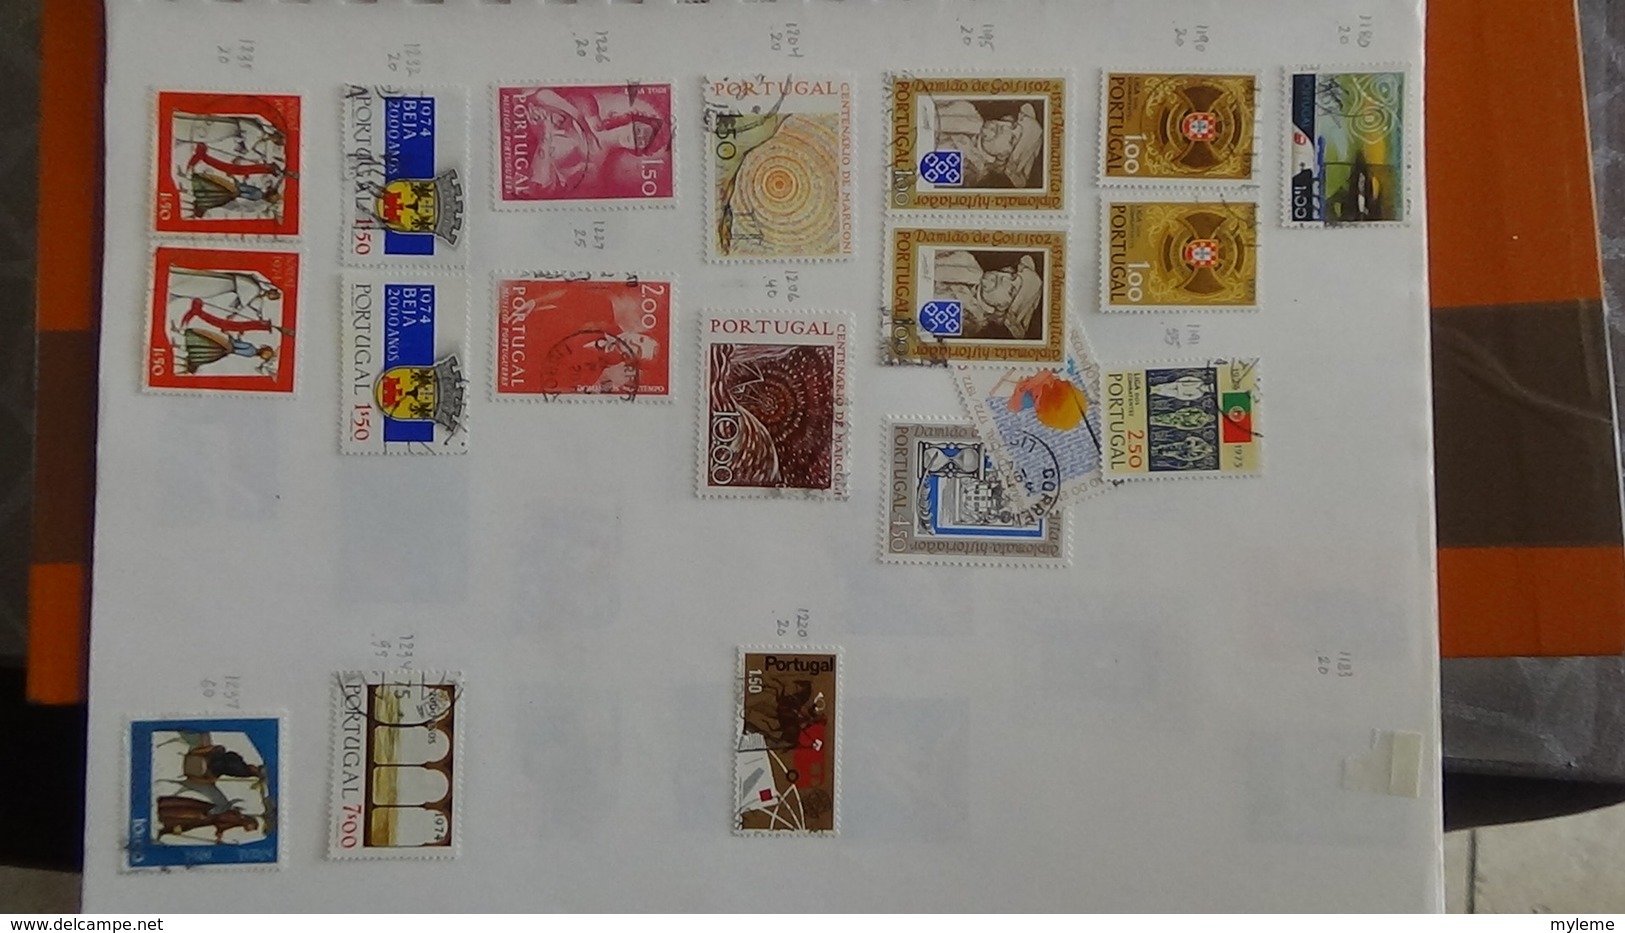 A255 Cahier de timbres du Portugal  !!! Voir commentaires